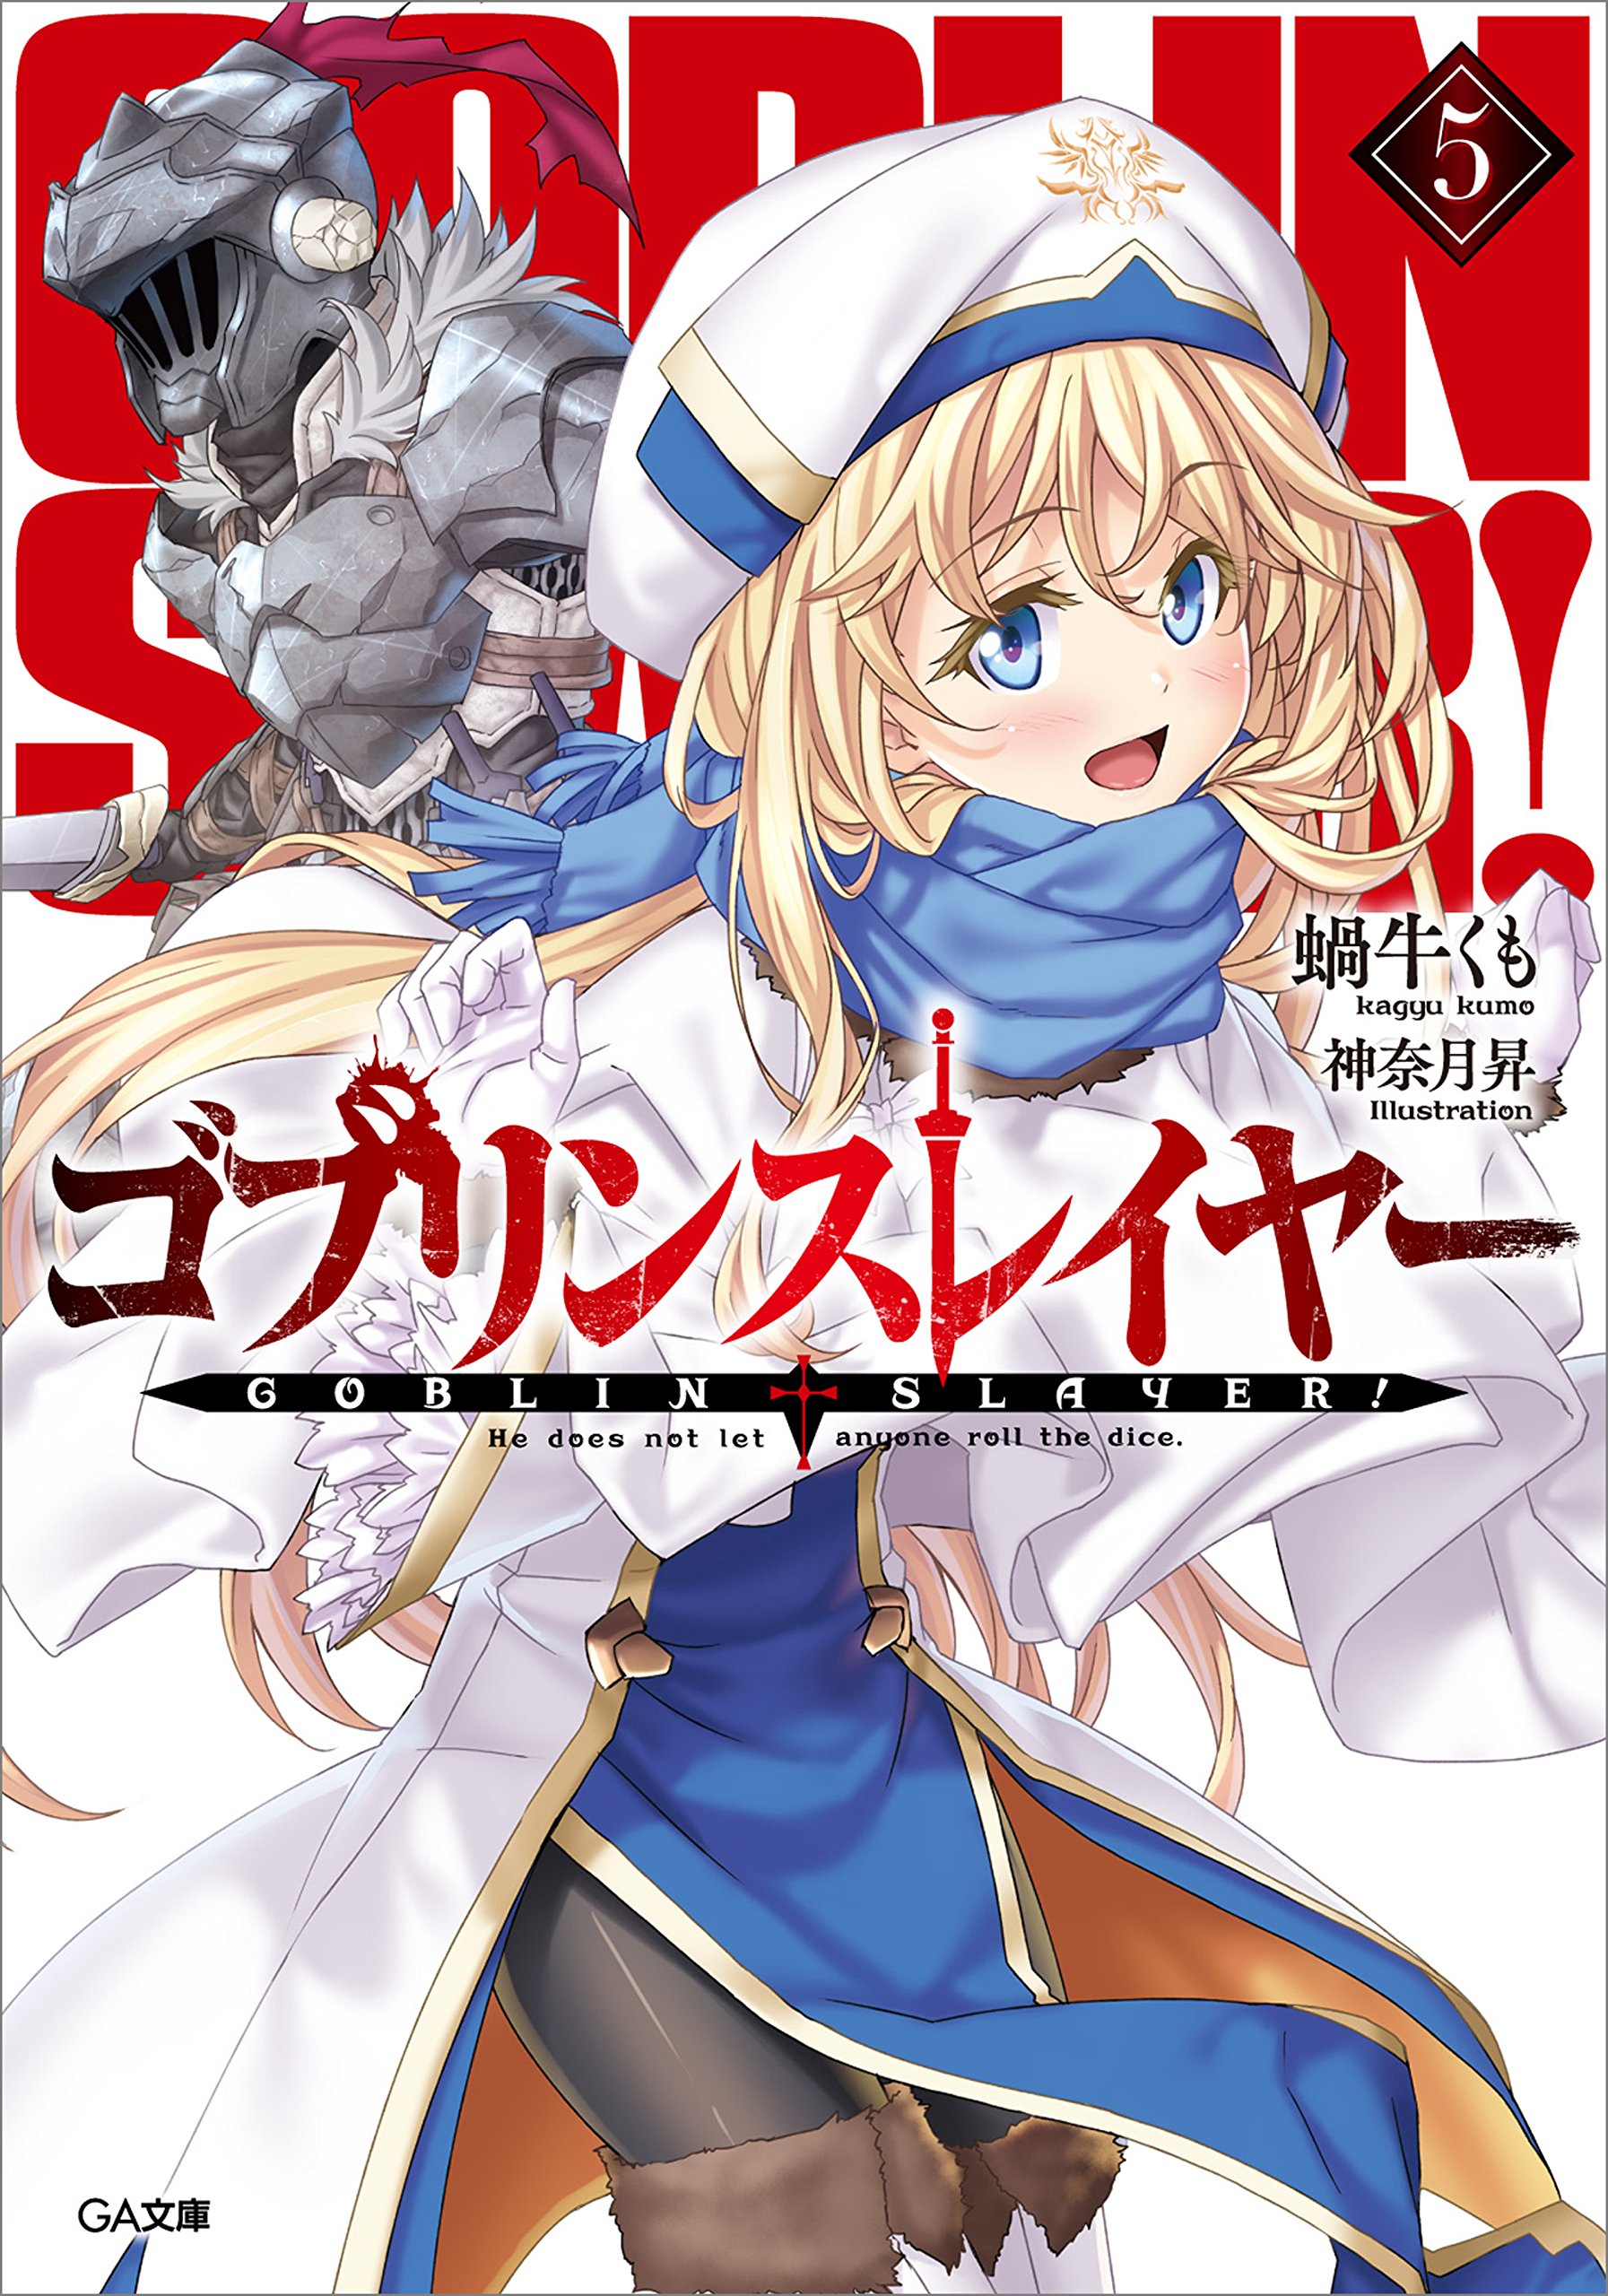 Light Novel Volume 5 Goblin Slayer Wiki Fandom